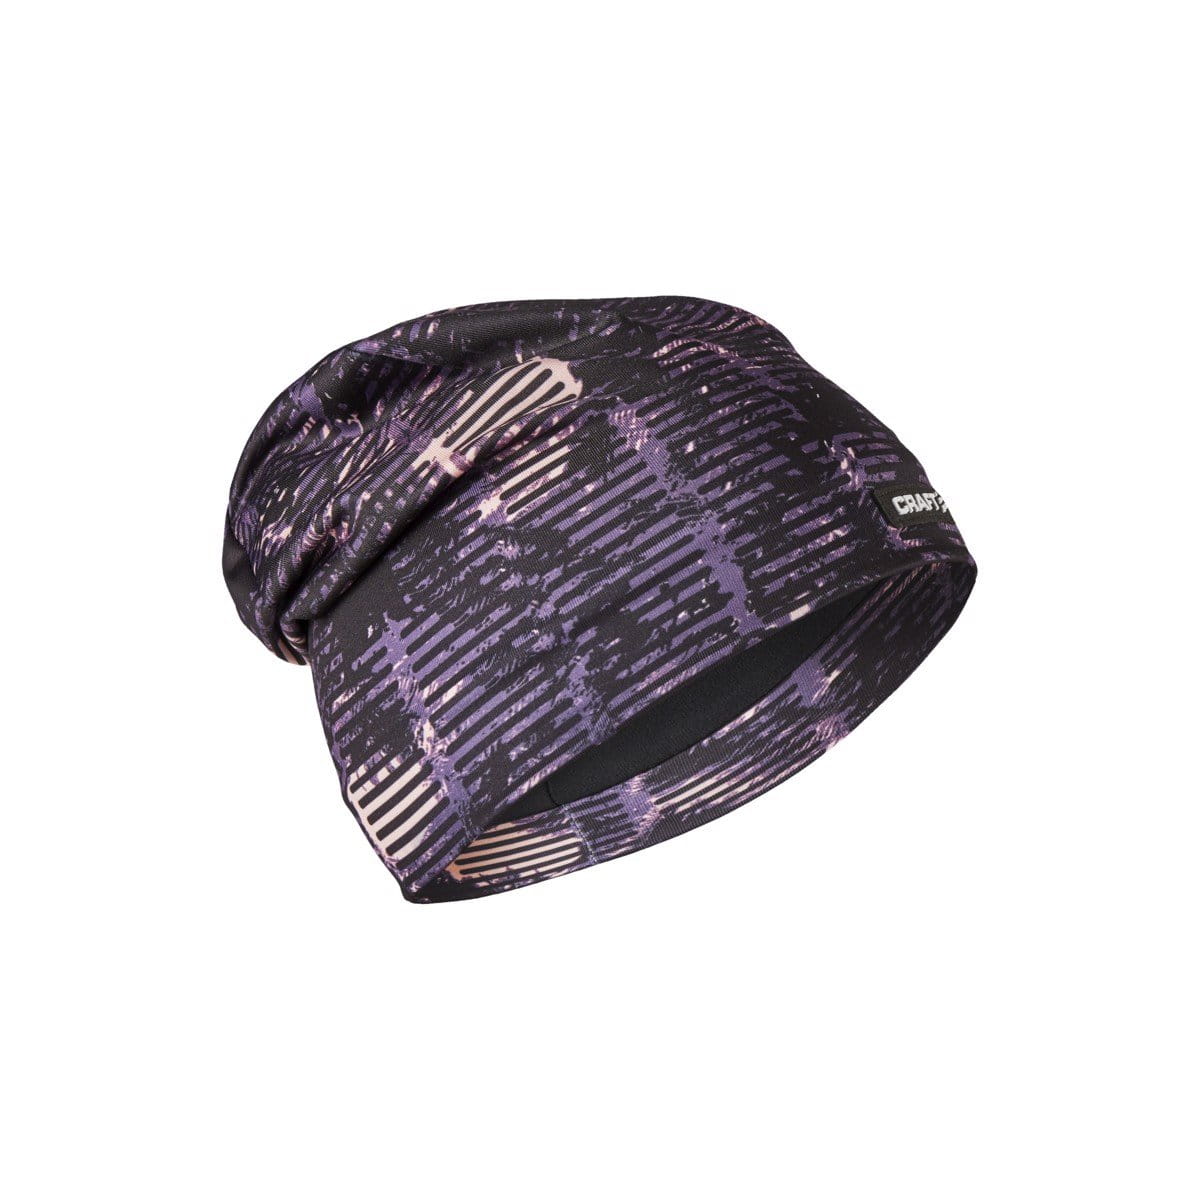 Unisex sportovní čepice Craft Čepice Identity fialová s černou